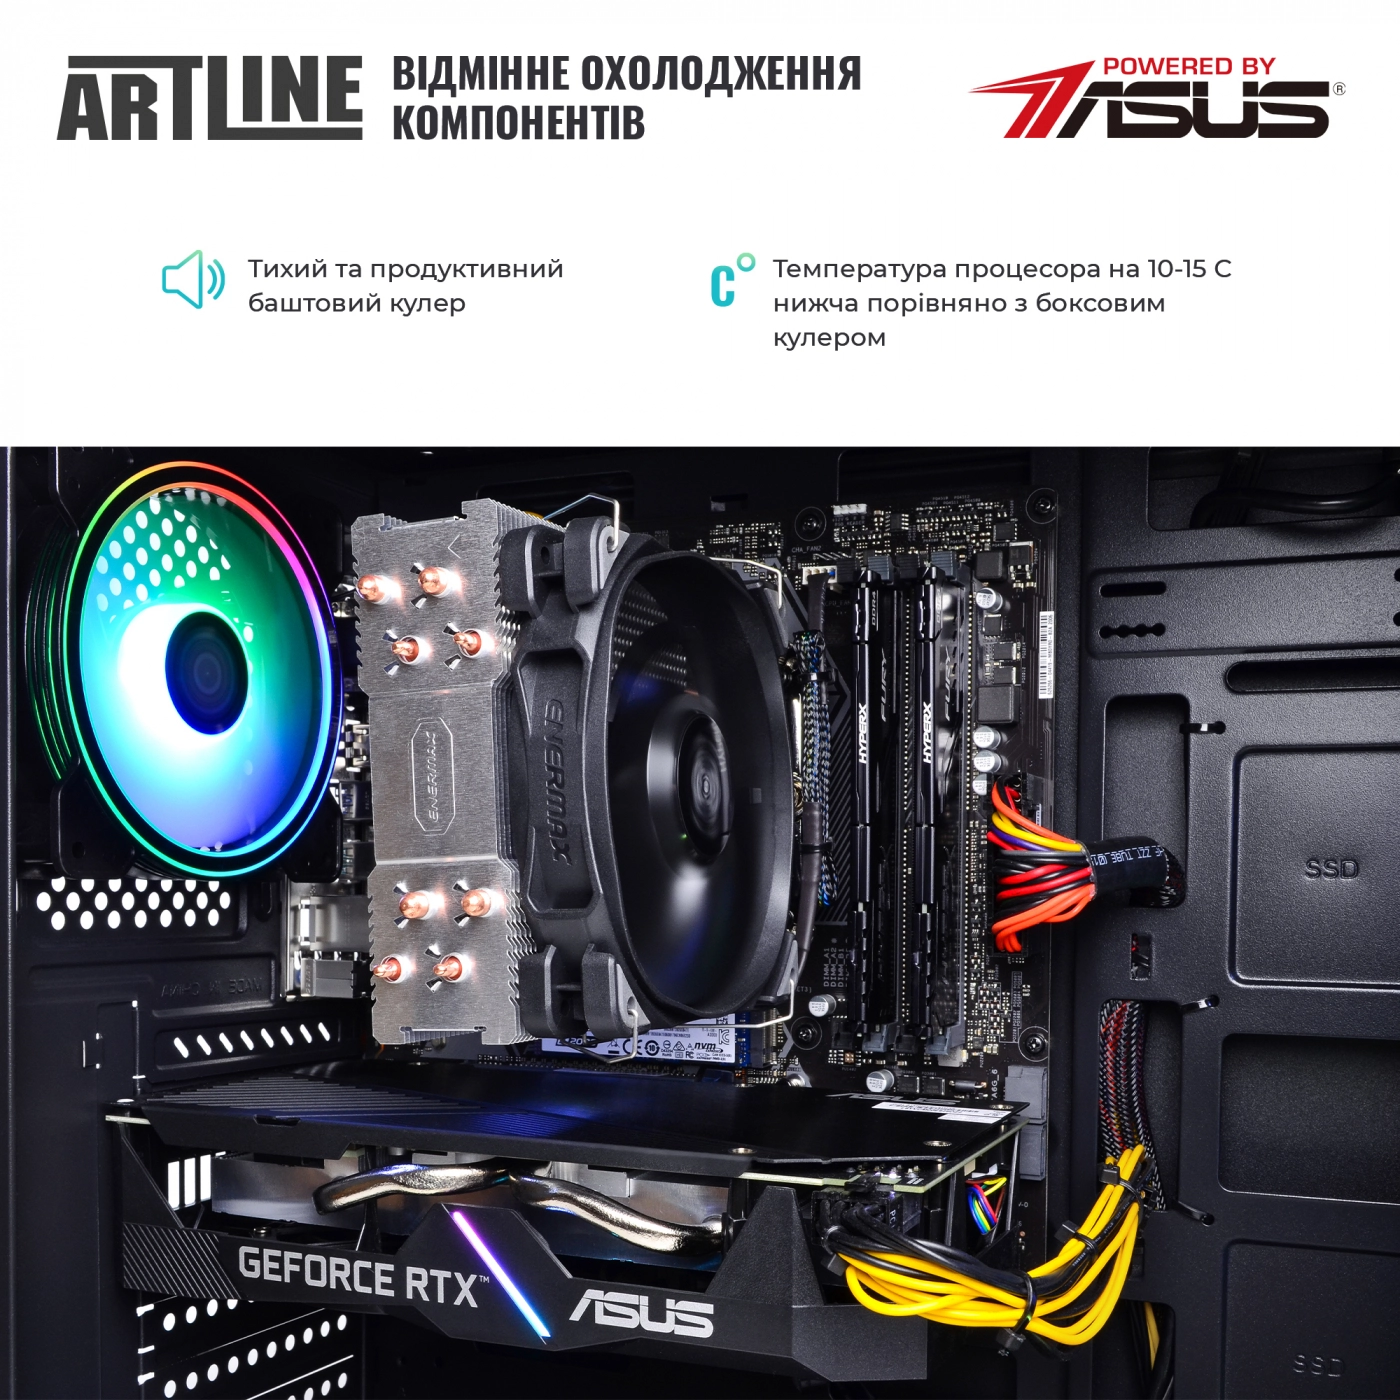 Купить Компьютер ARTLINE Gaming X68v16 - фото 8